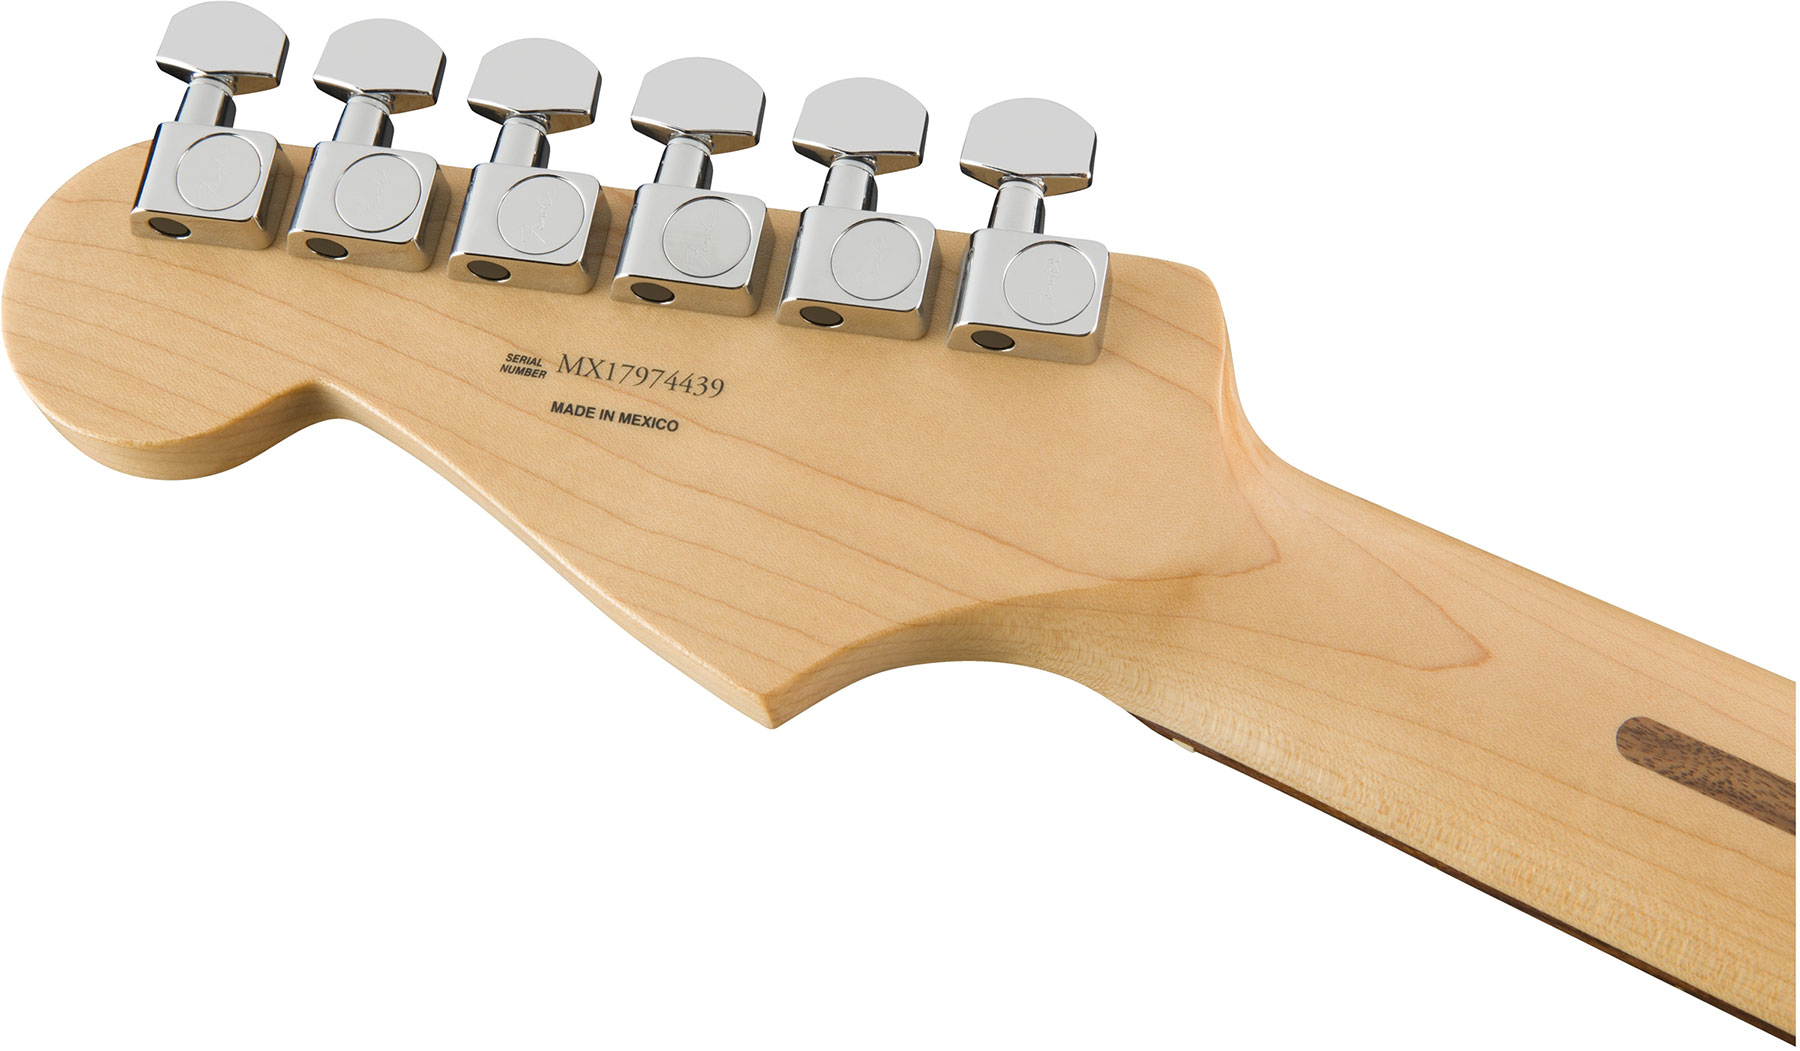 Fender Strat Player Mex Sss Pf - Black - Elektrische gitaar in Str-vorm - Variation 3